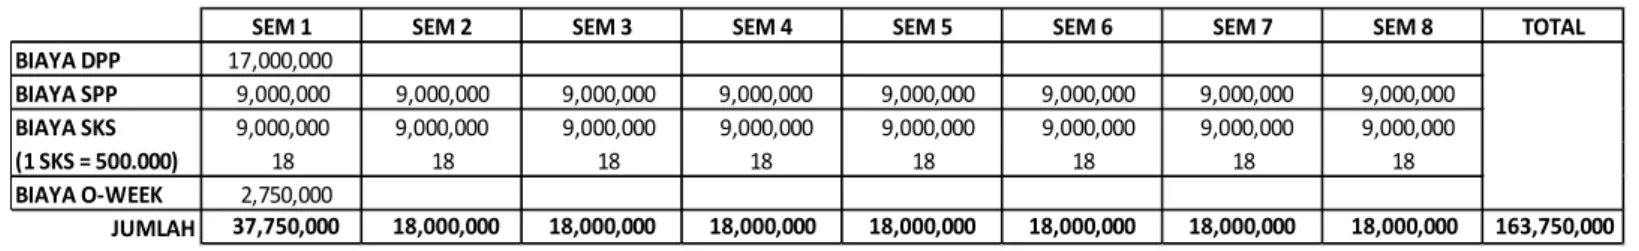 Ilustrasi berdasarkan biaya pelunasan tanggal 20 Januari 2022, dimana calon mahasiswa baru sudah mendapat potongan biaya DPP